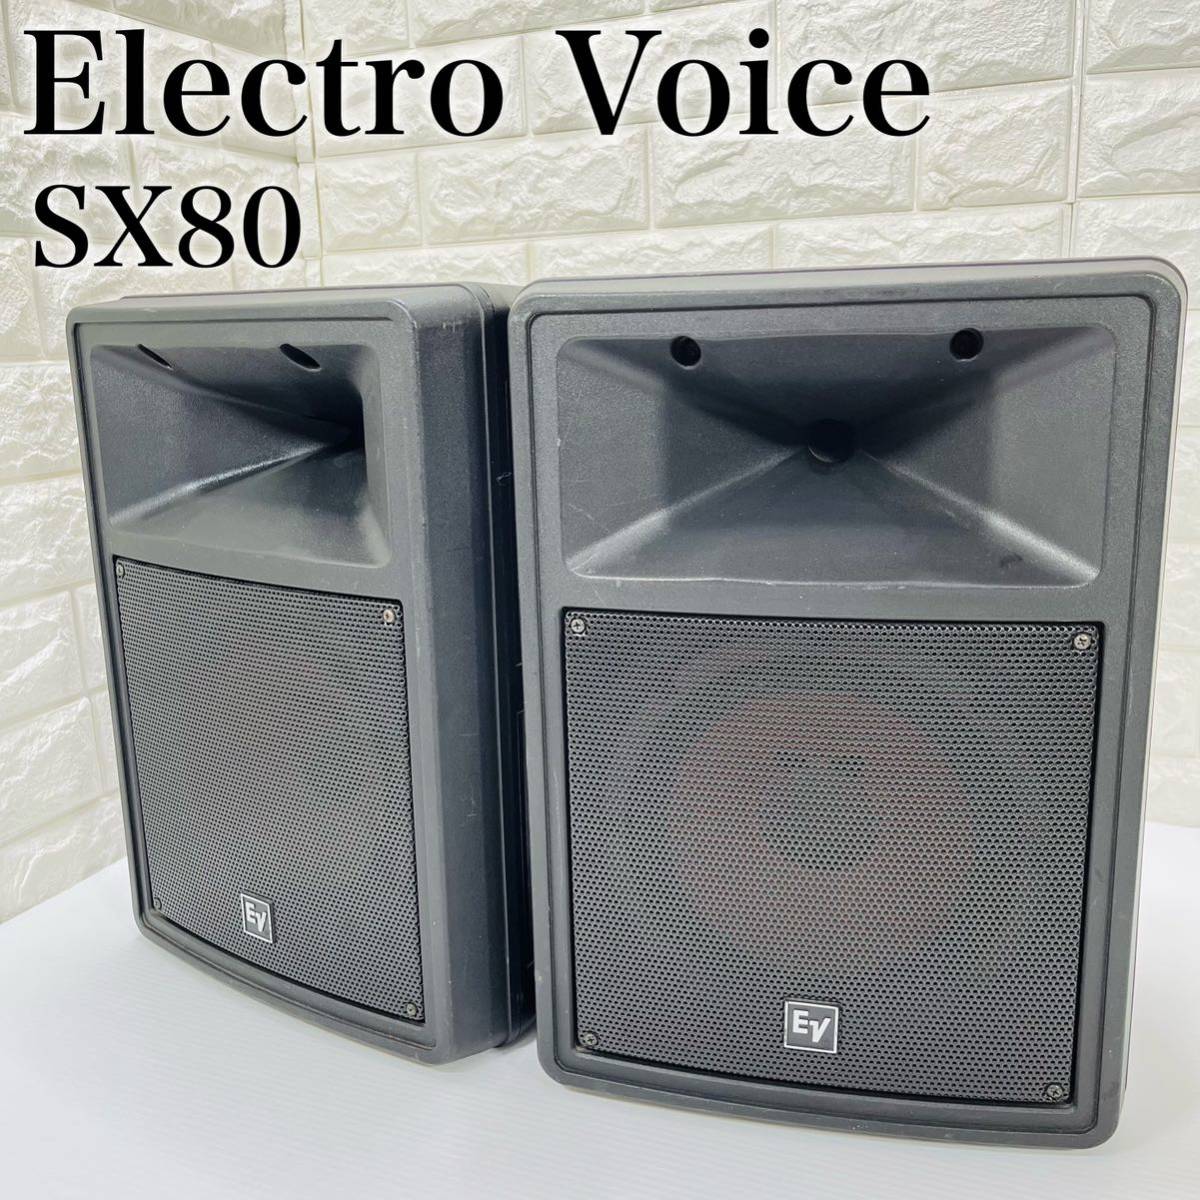 EV Electro Voice エレクトロボイス 2WAYスピーカー SX80 ペア オーディオ機器 モニタースピーカー